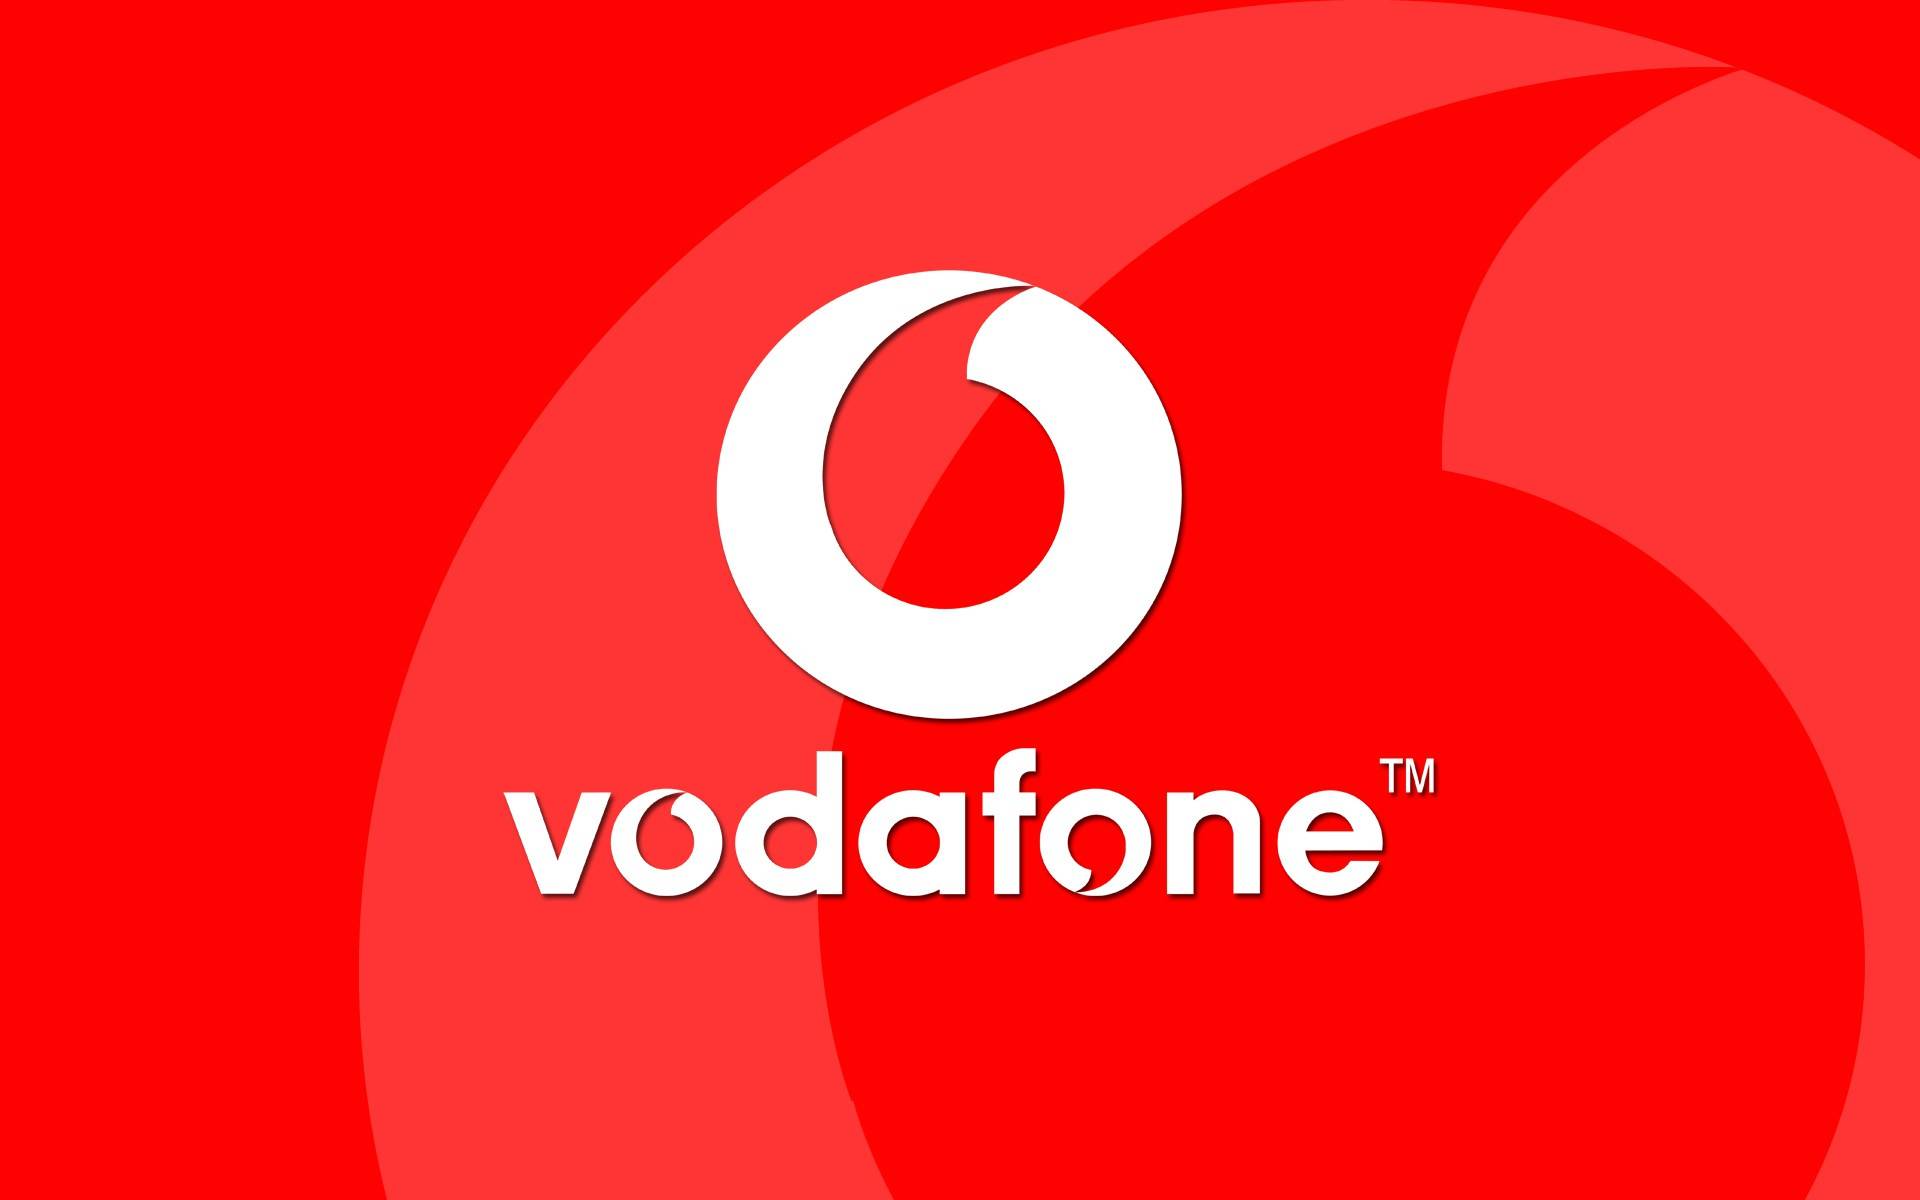 Vodafon. 2 września ze smartfonami, których ceny są DUŻO obniżone